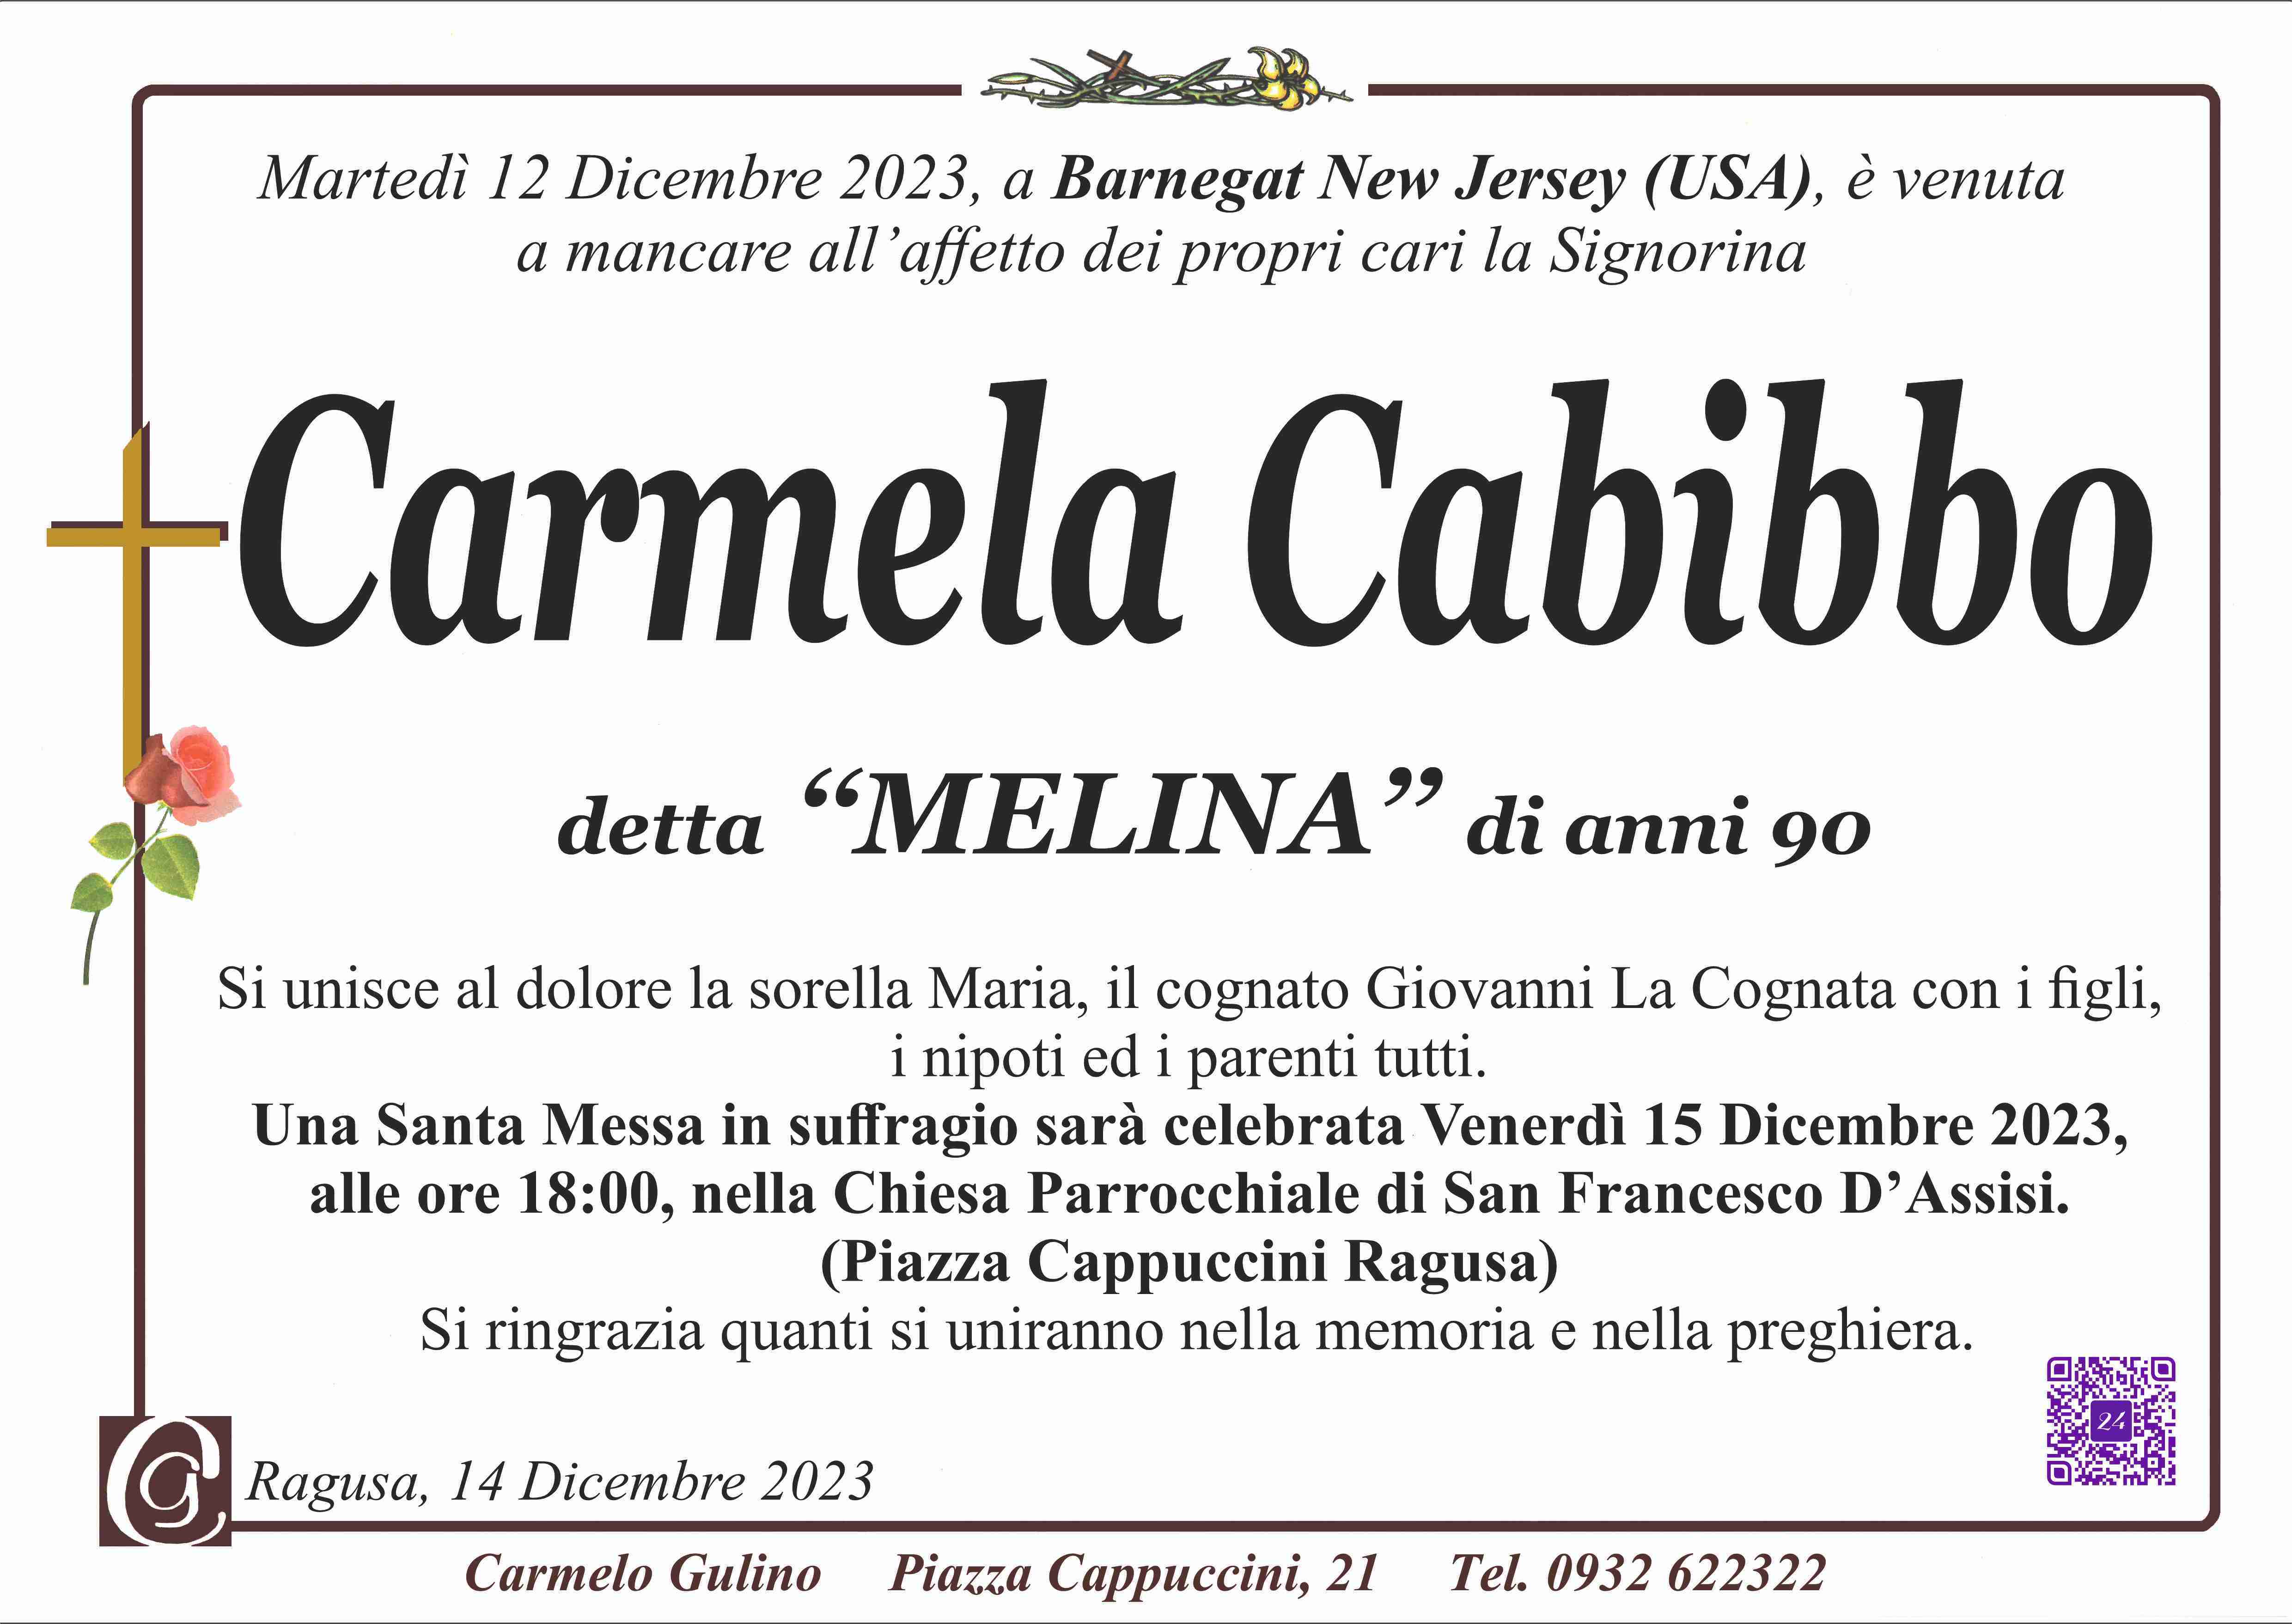 Carmela Cabibbo